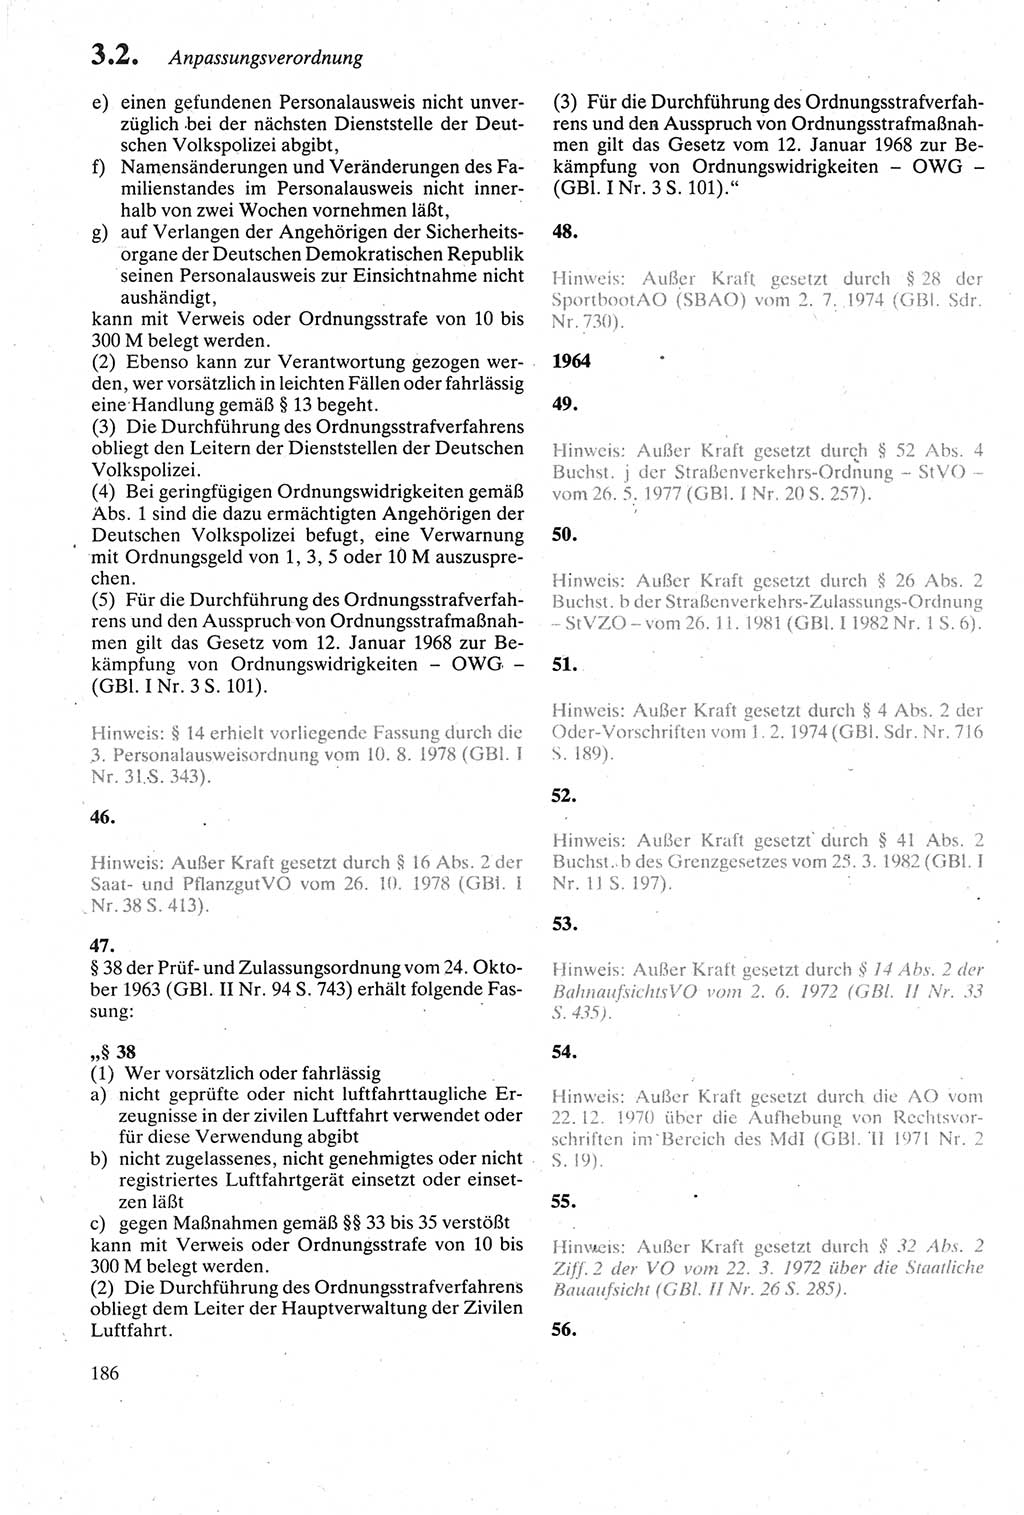 Strafgesetzbuch (StGB) der Deutschen Demokratischen Republik (DDR) sowie angrenzende Gesetze und Bestimmungen 1979, Seite 186 (StGB DDR Ges. Best. 1979, S. 186)